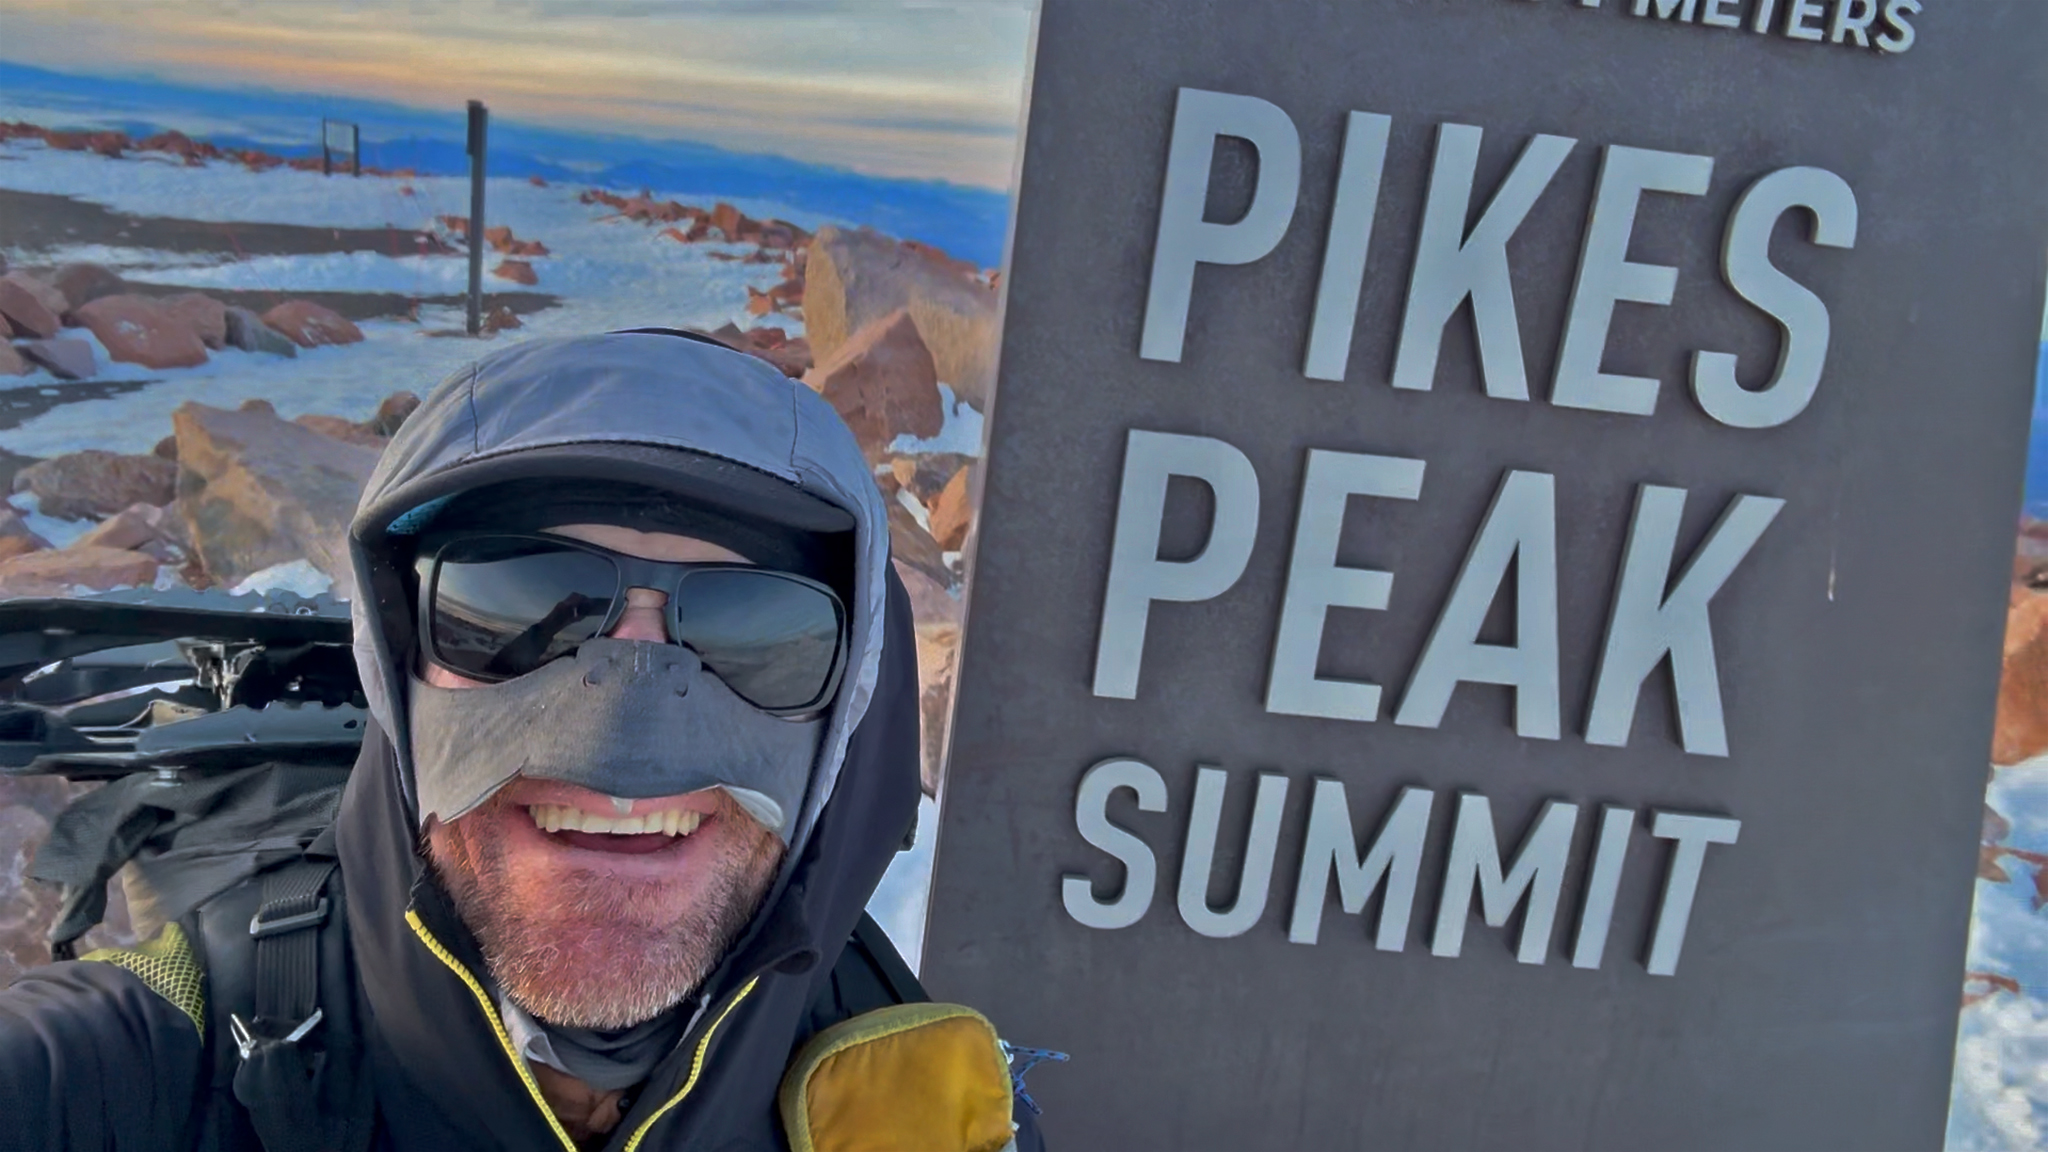 Winter Pikes Peak Summit